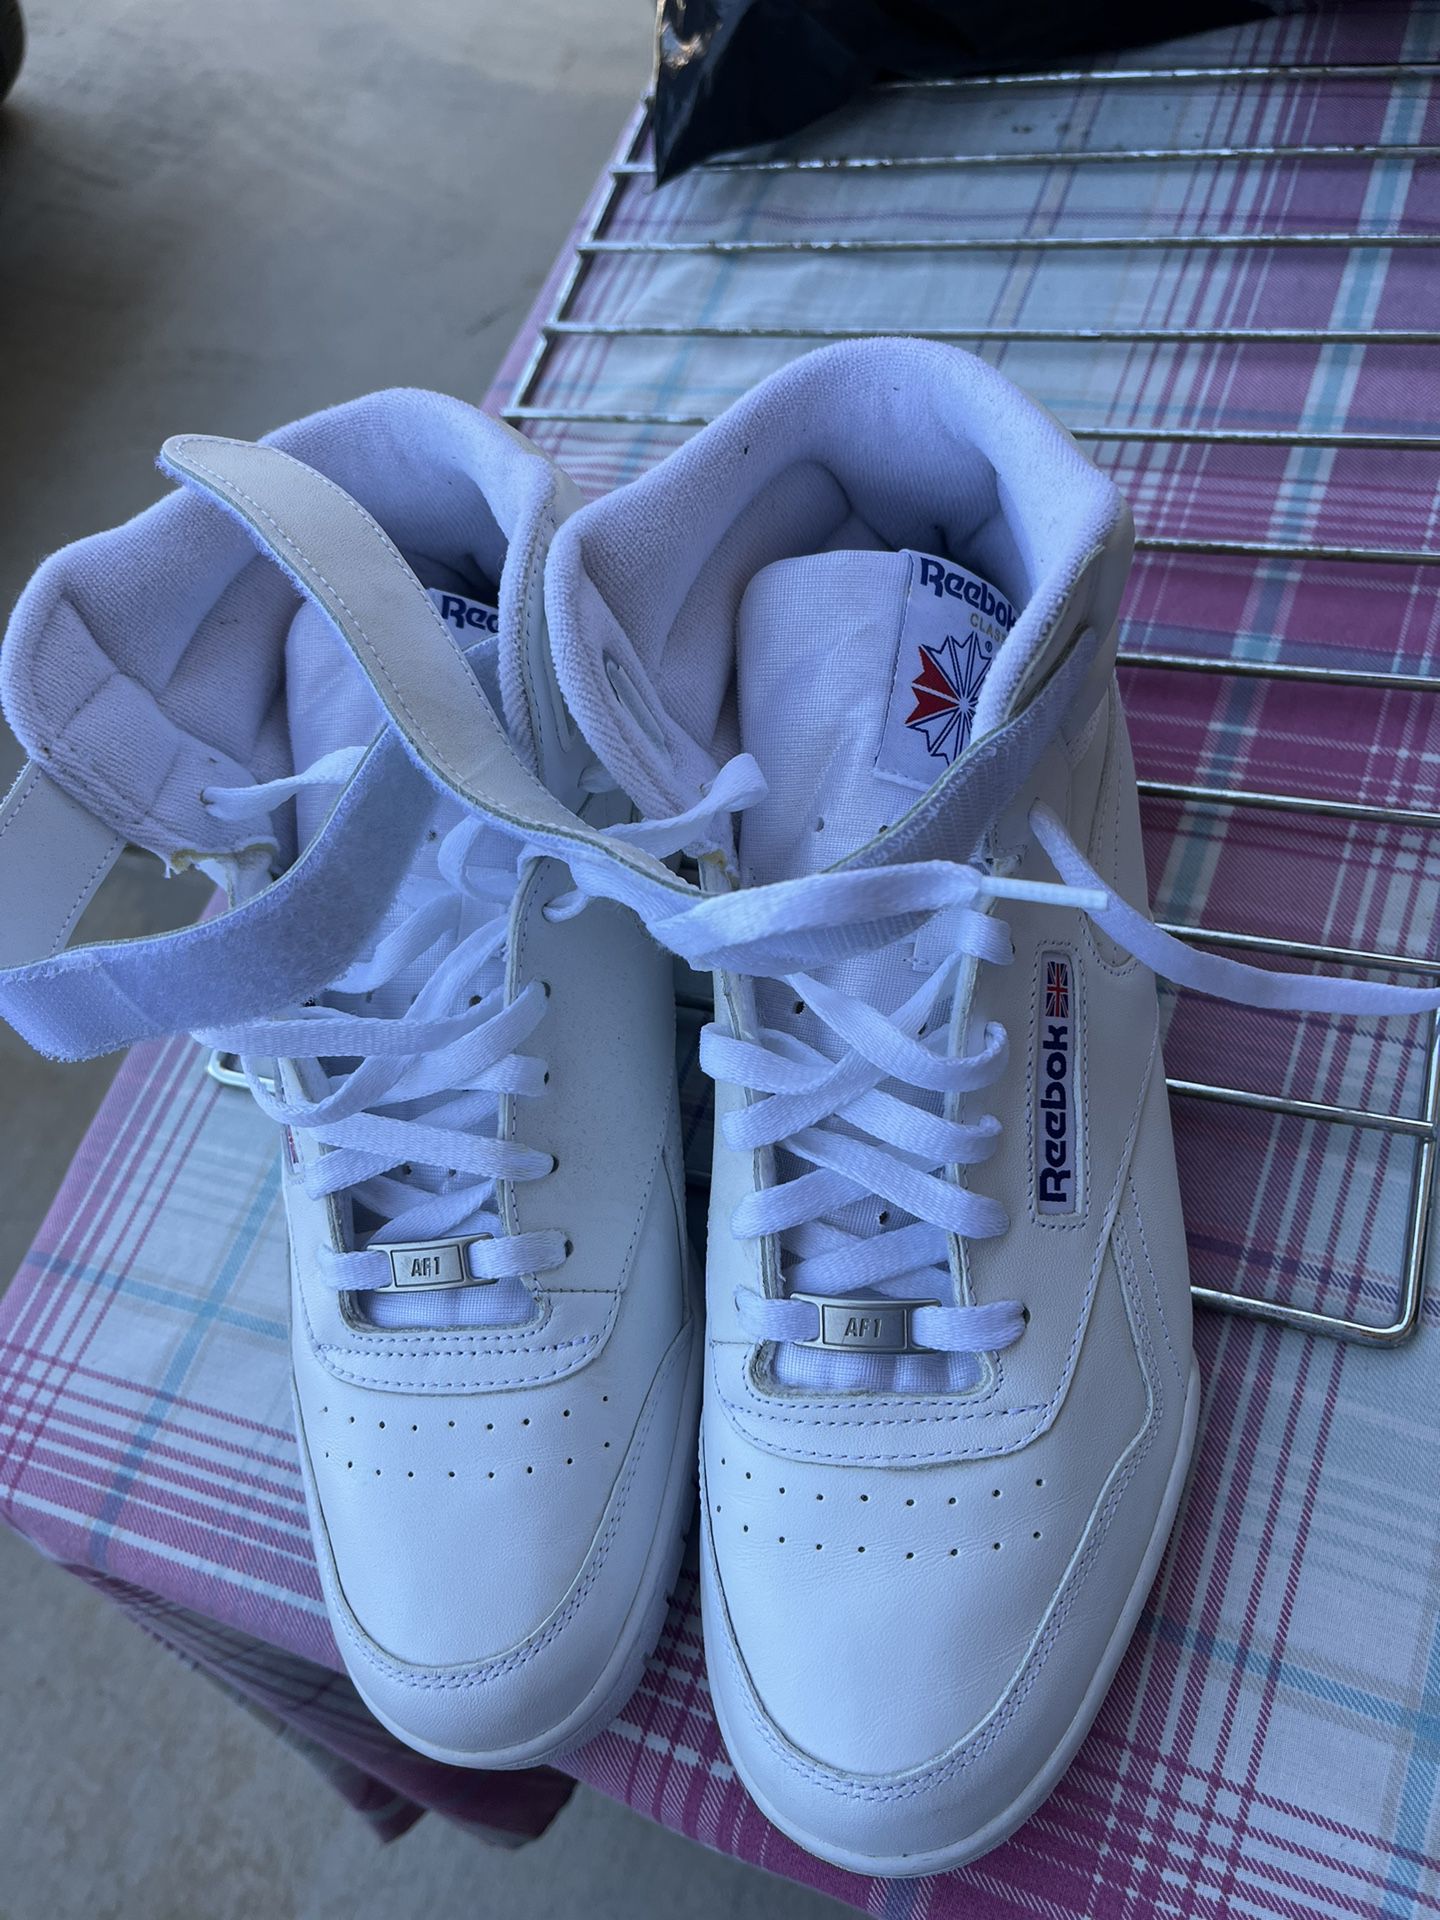 Mens Tennis Shoes Size 10 White Color